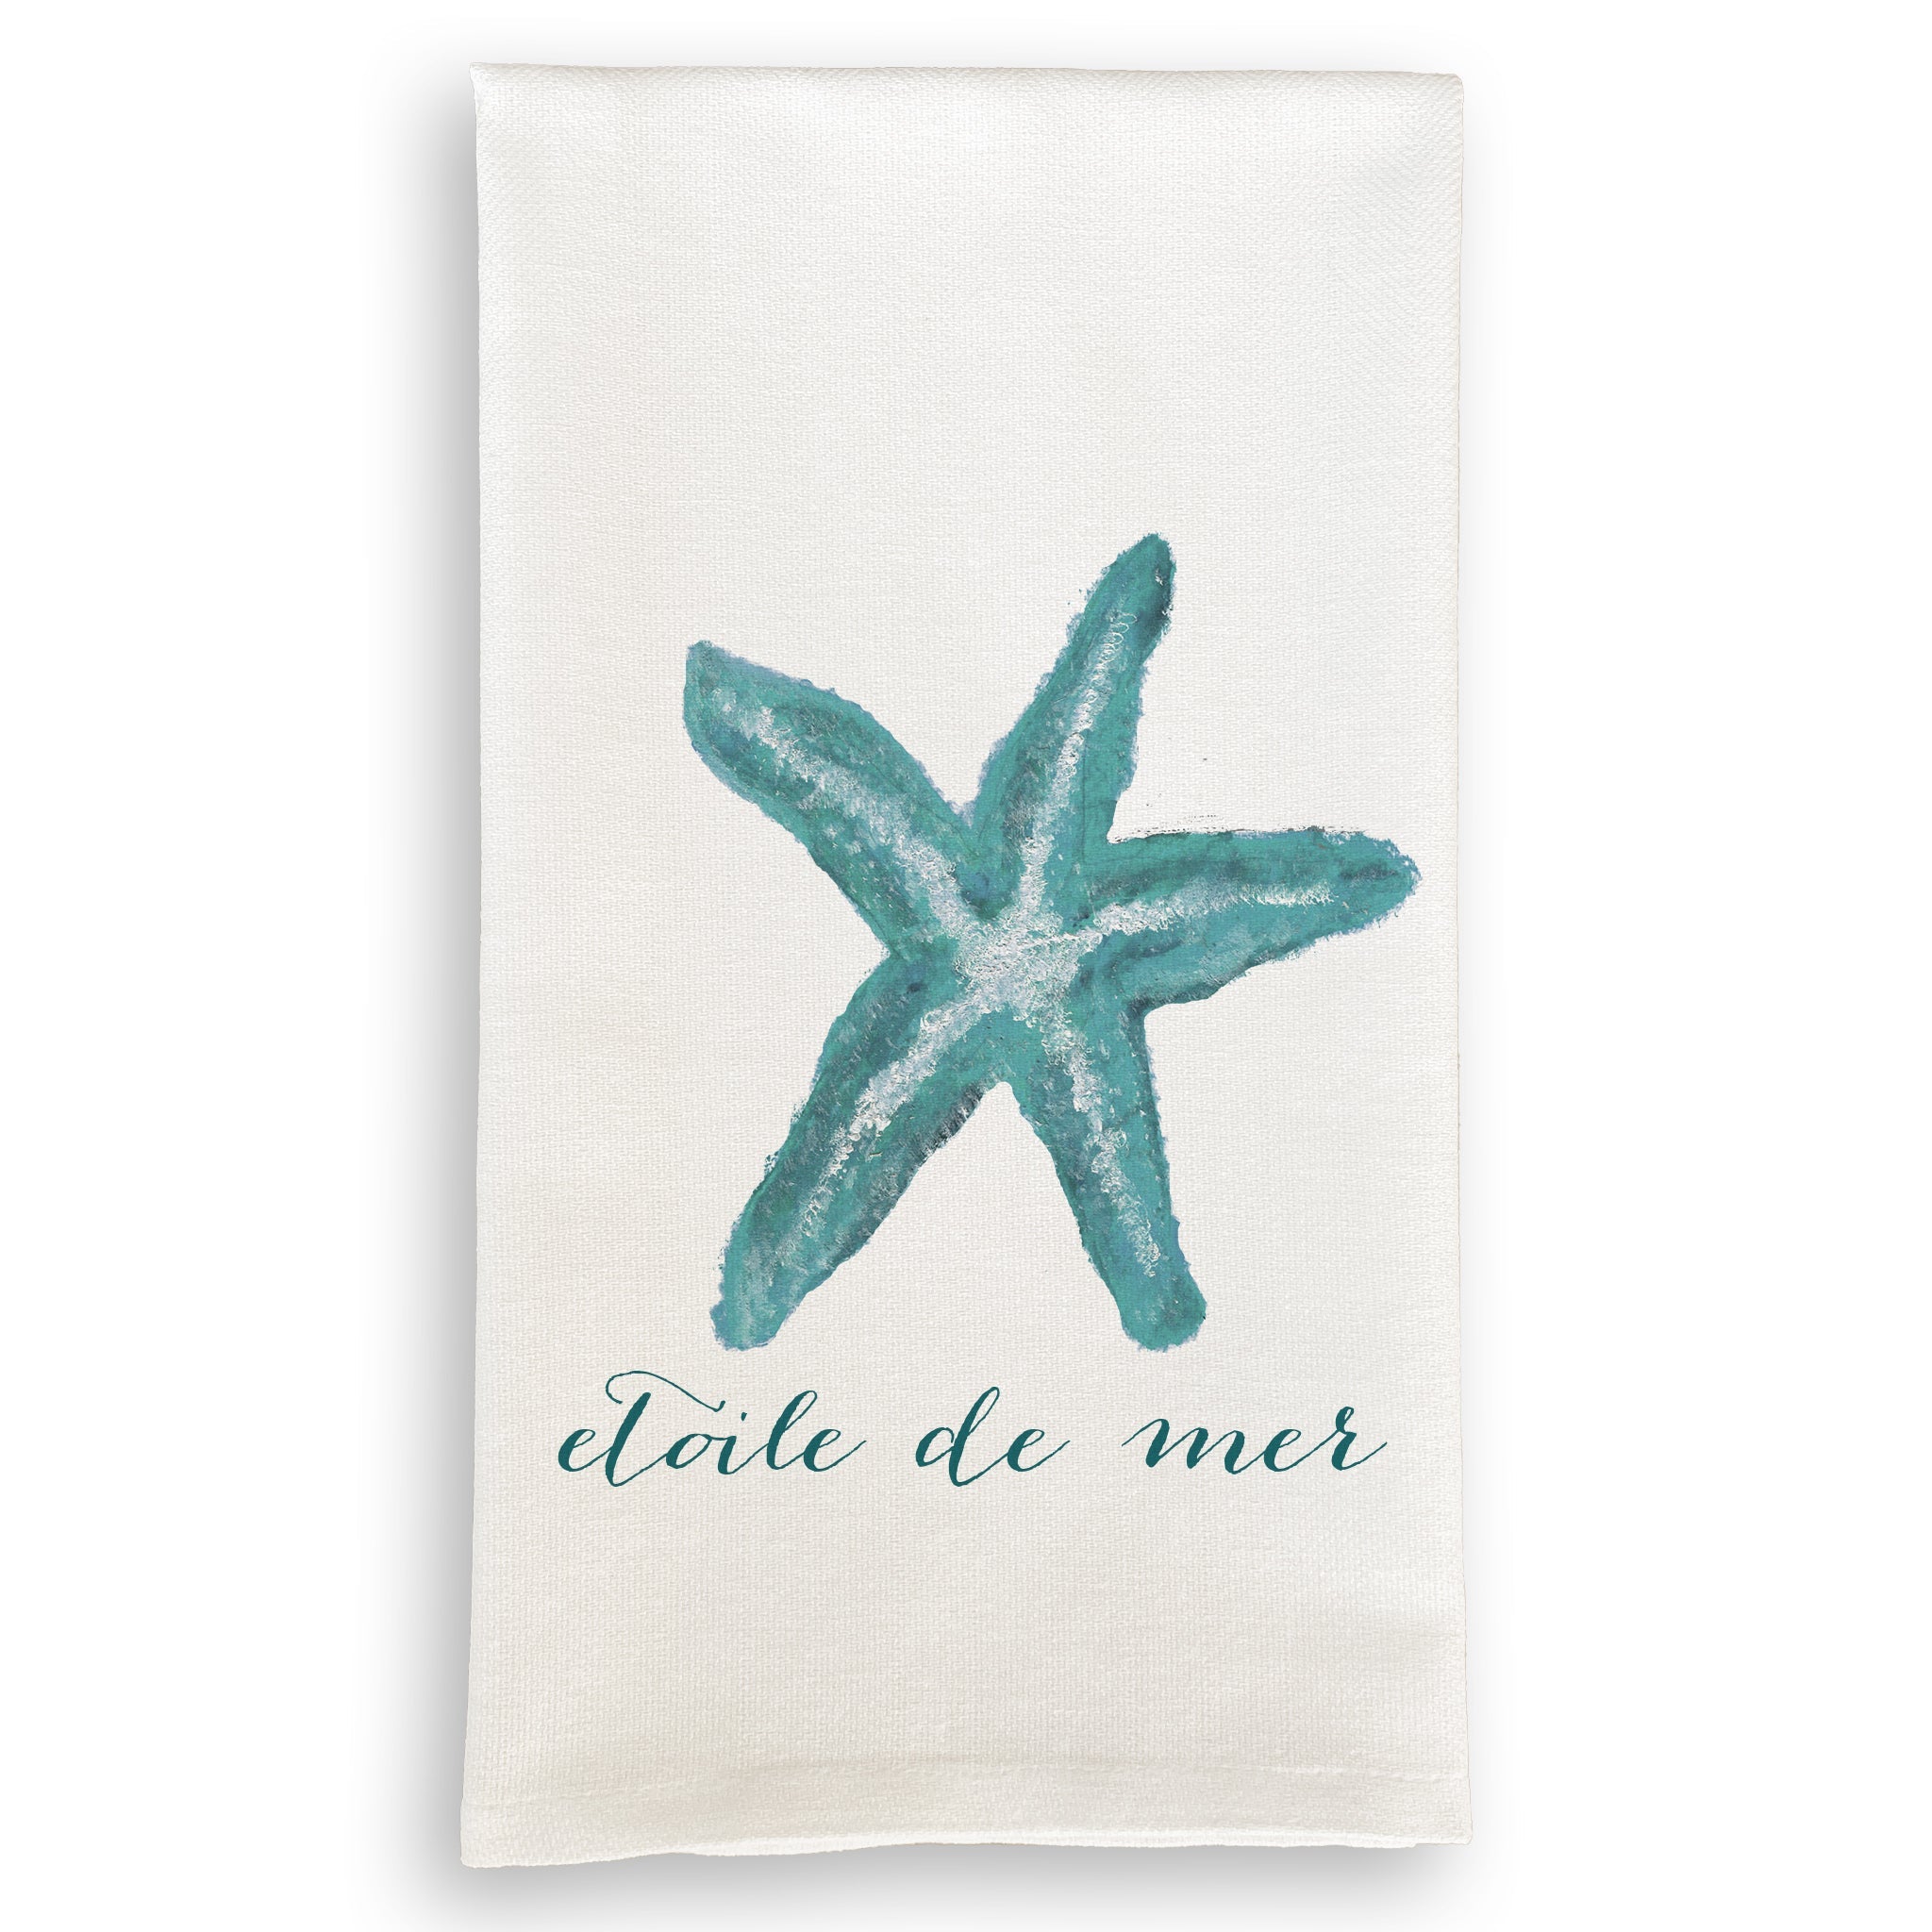 Starfish Print Swedish Dishcloth